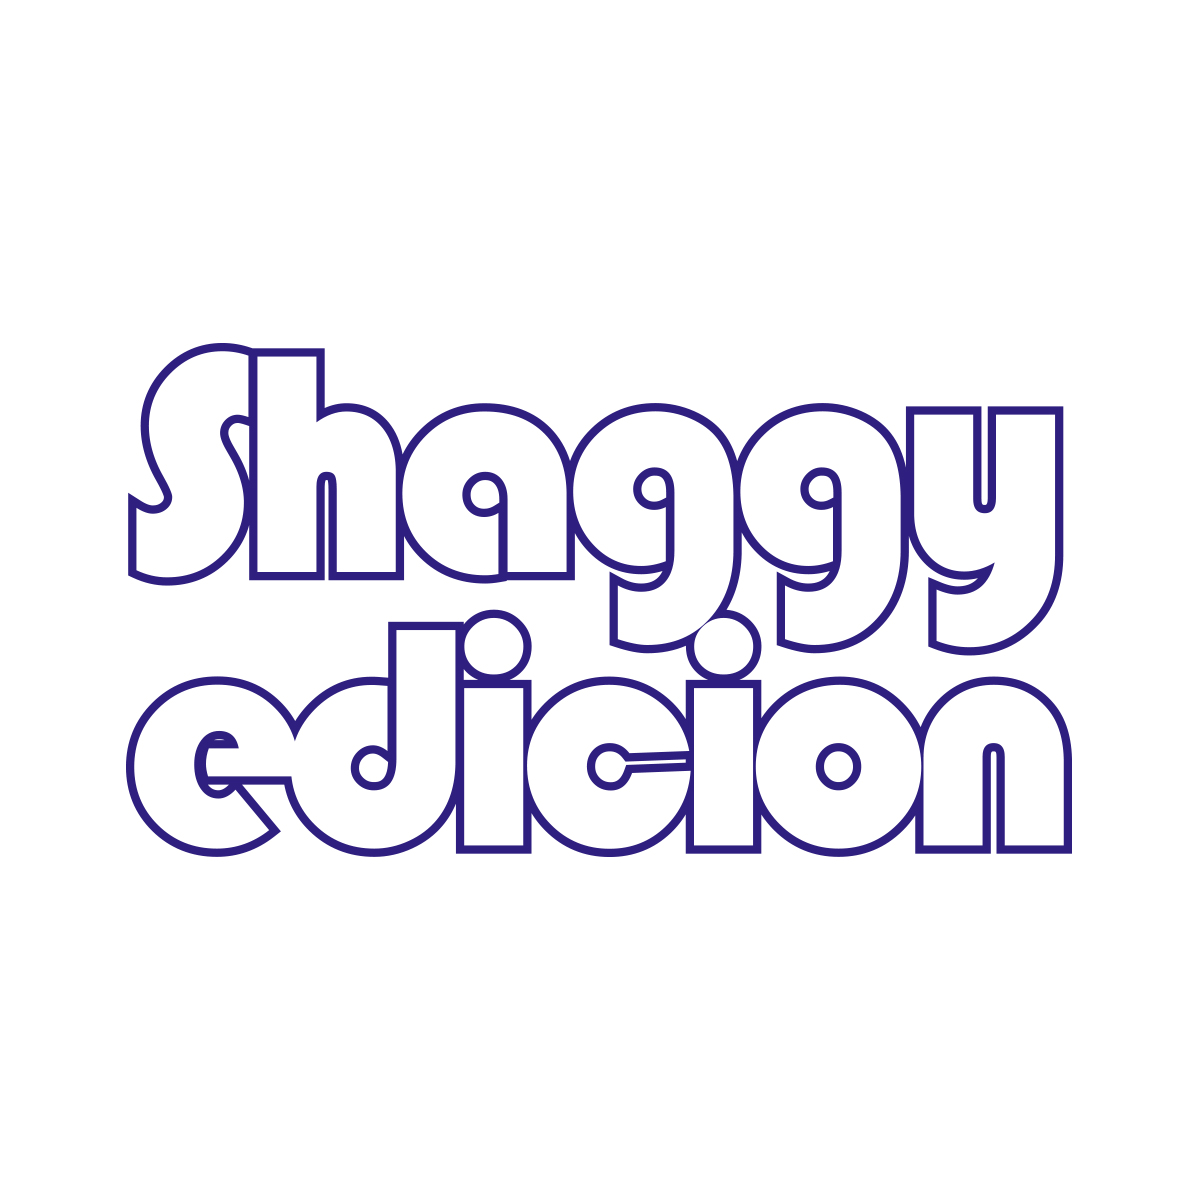 SHAGGY EDICION